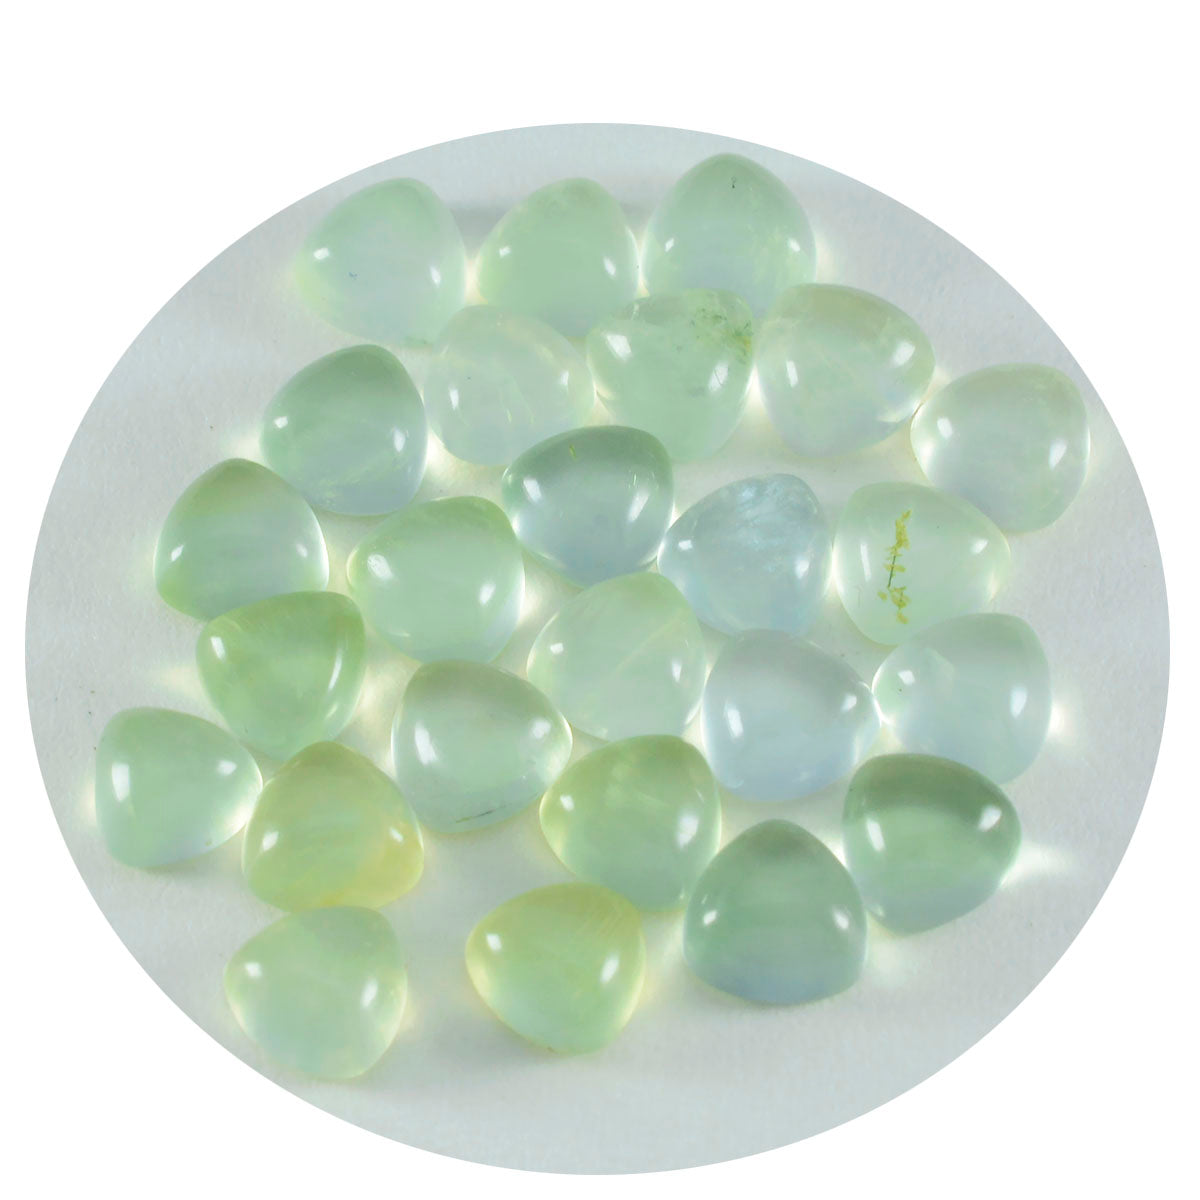 riyogems 1шт зеленый пренит кабошон 7x7 мм форма триллиона драгоценный камень удивительного качества